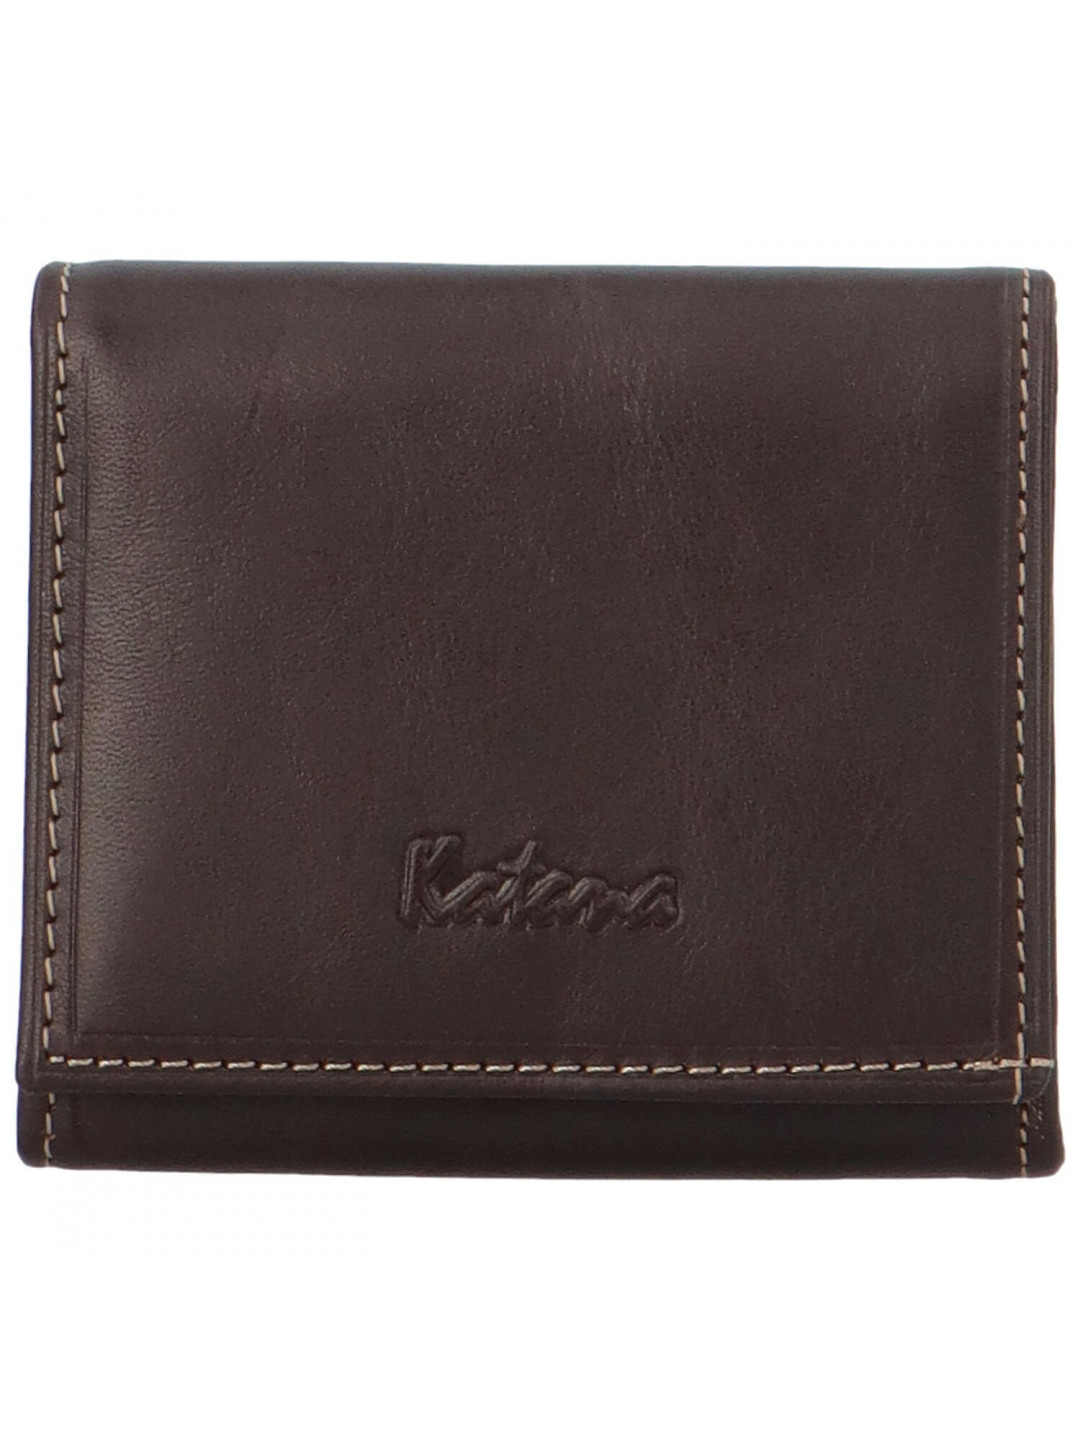 Elegantní dámská peněženka Katana Kittina čokoládová